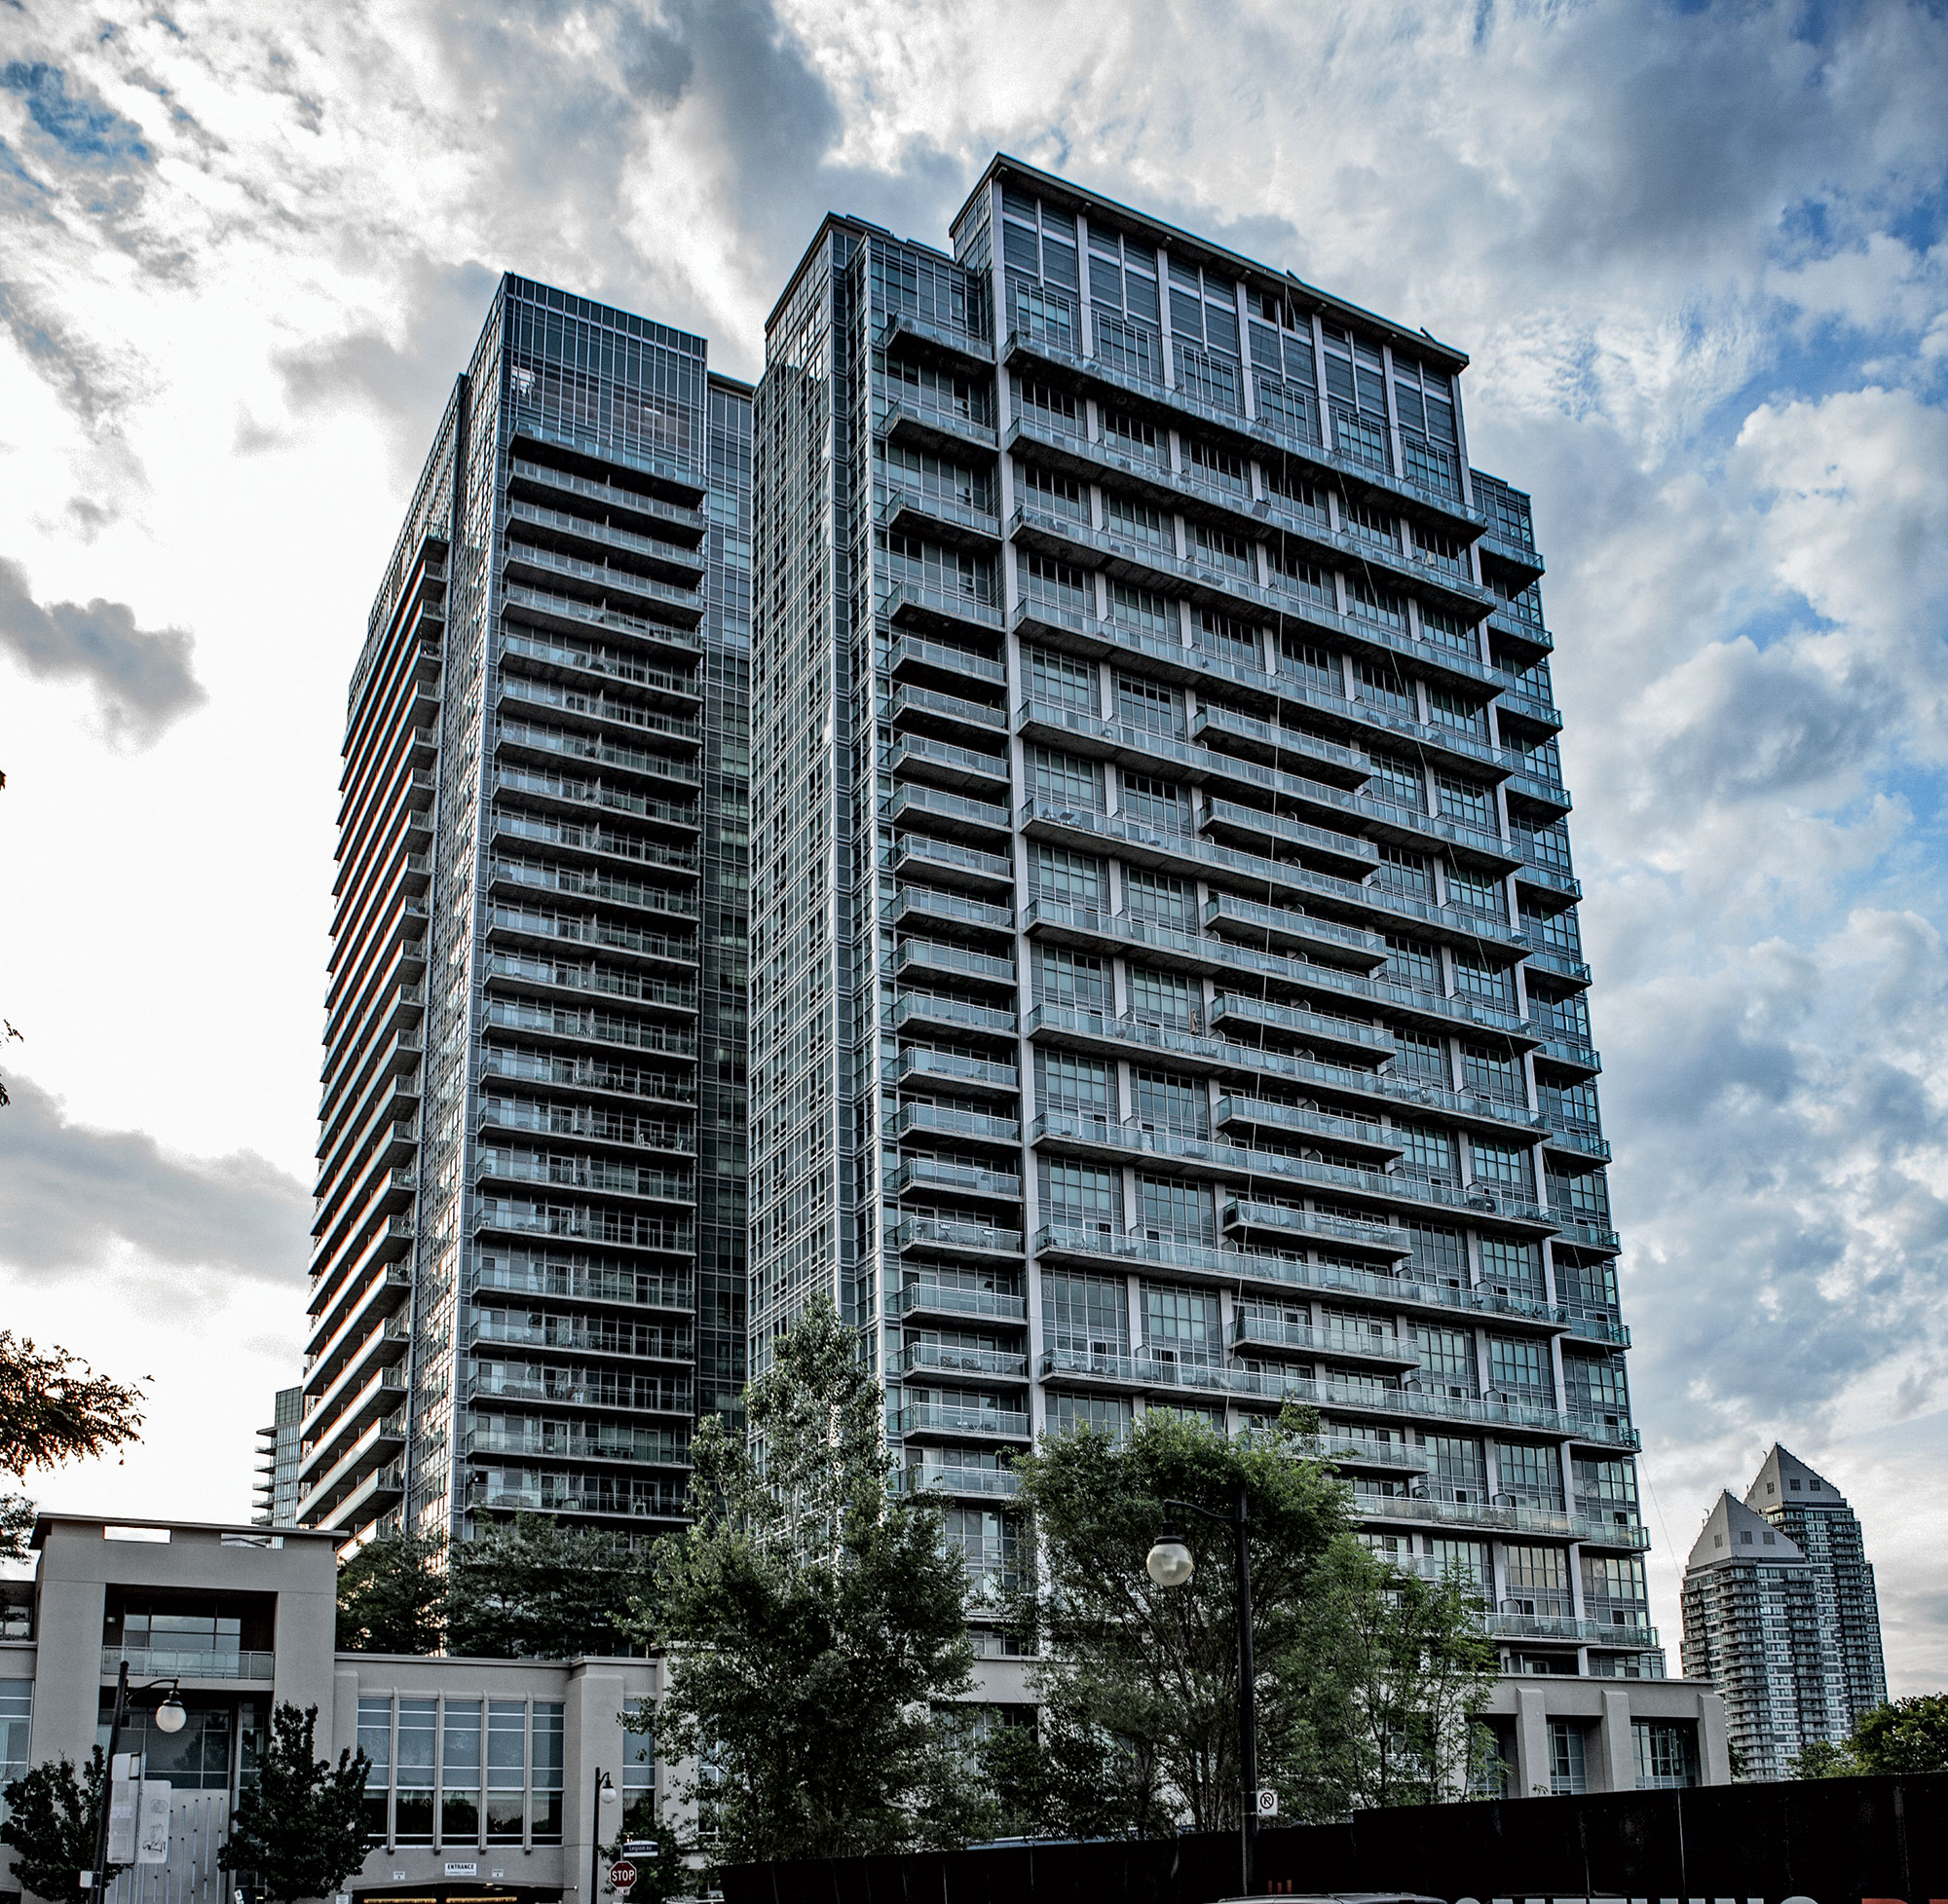 23 storey, 244 suite condominium with 3 levels of underground parking.